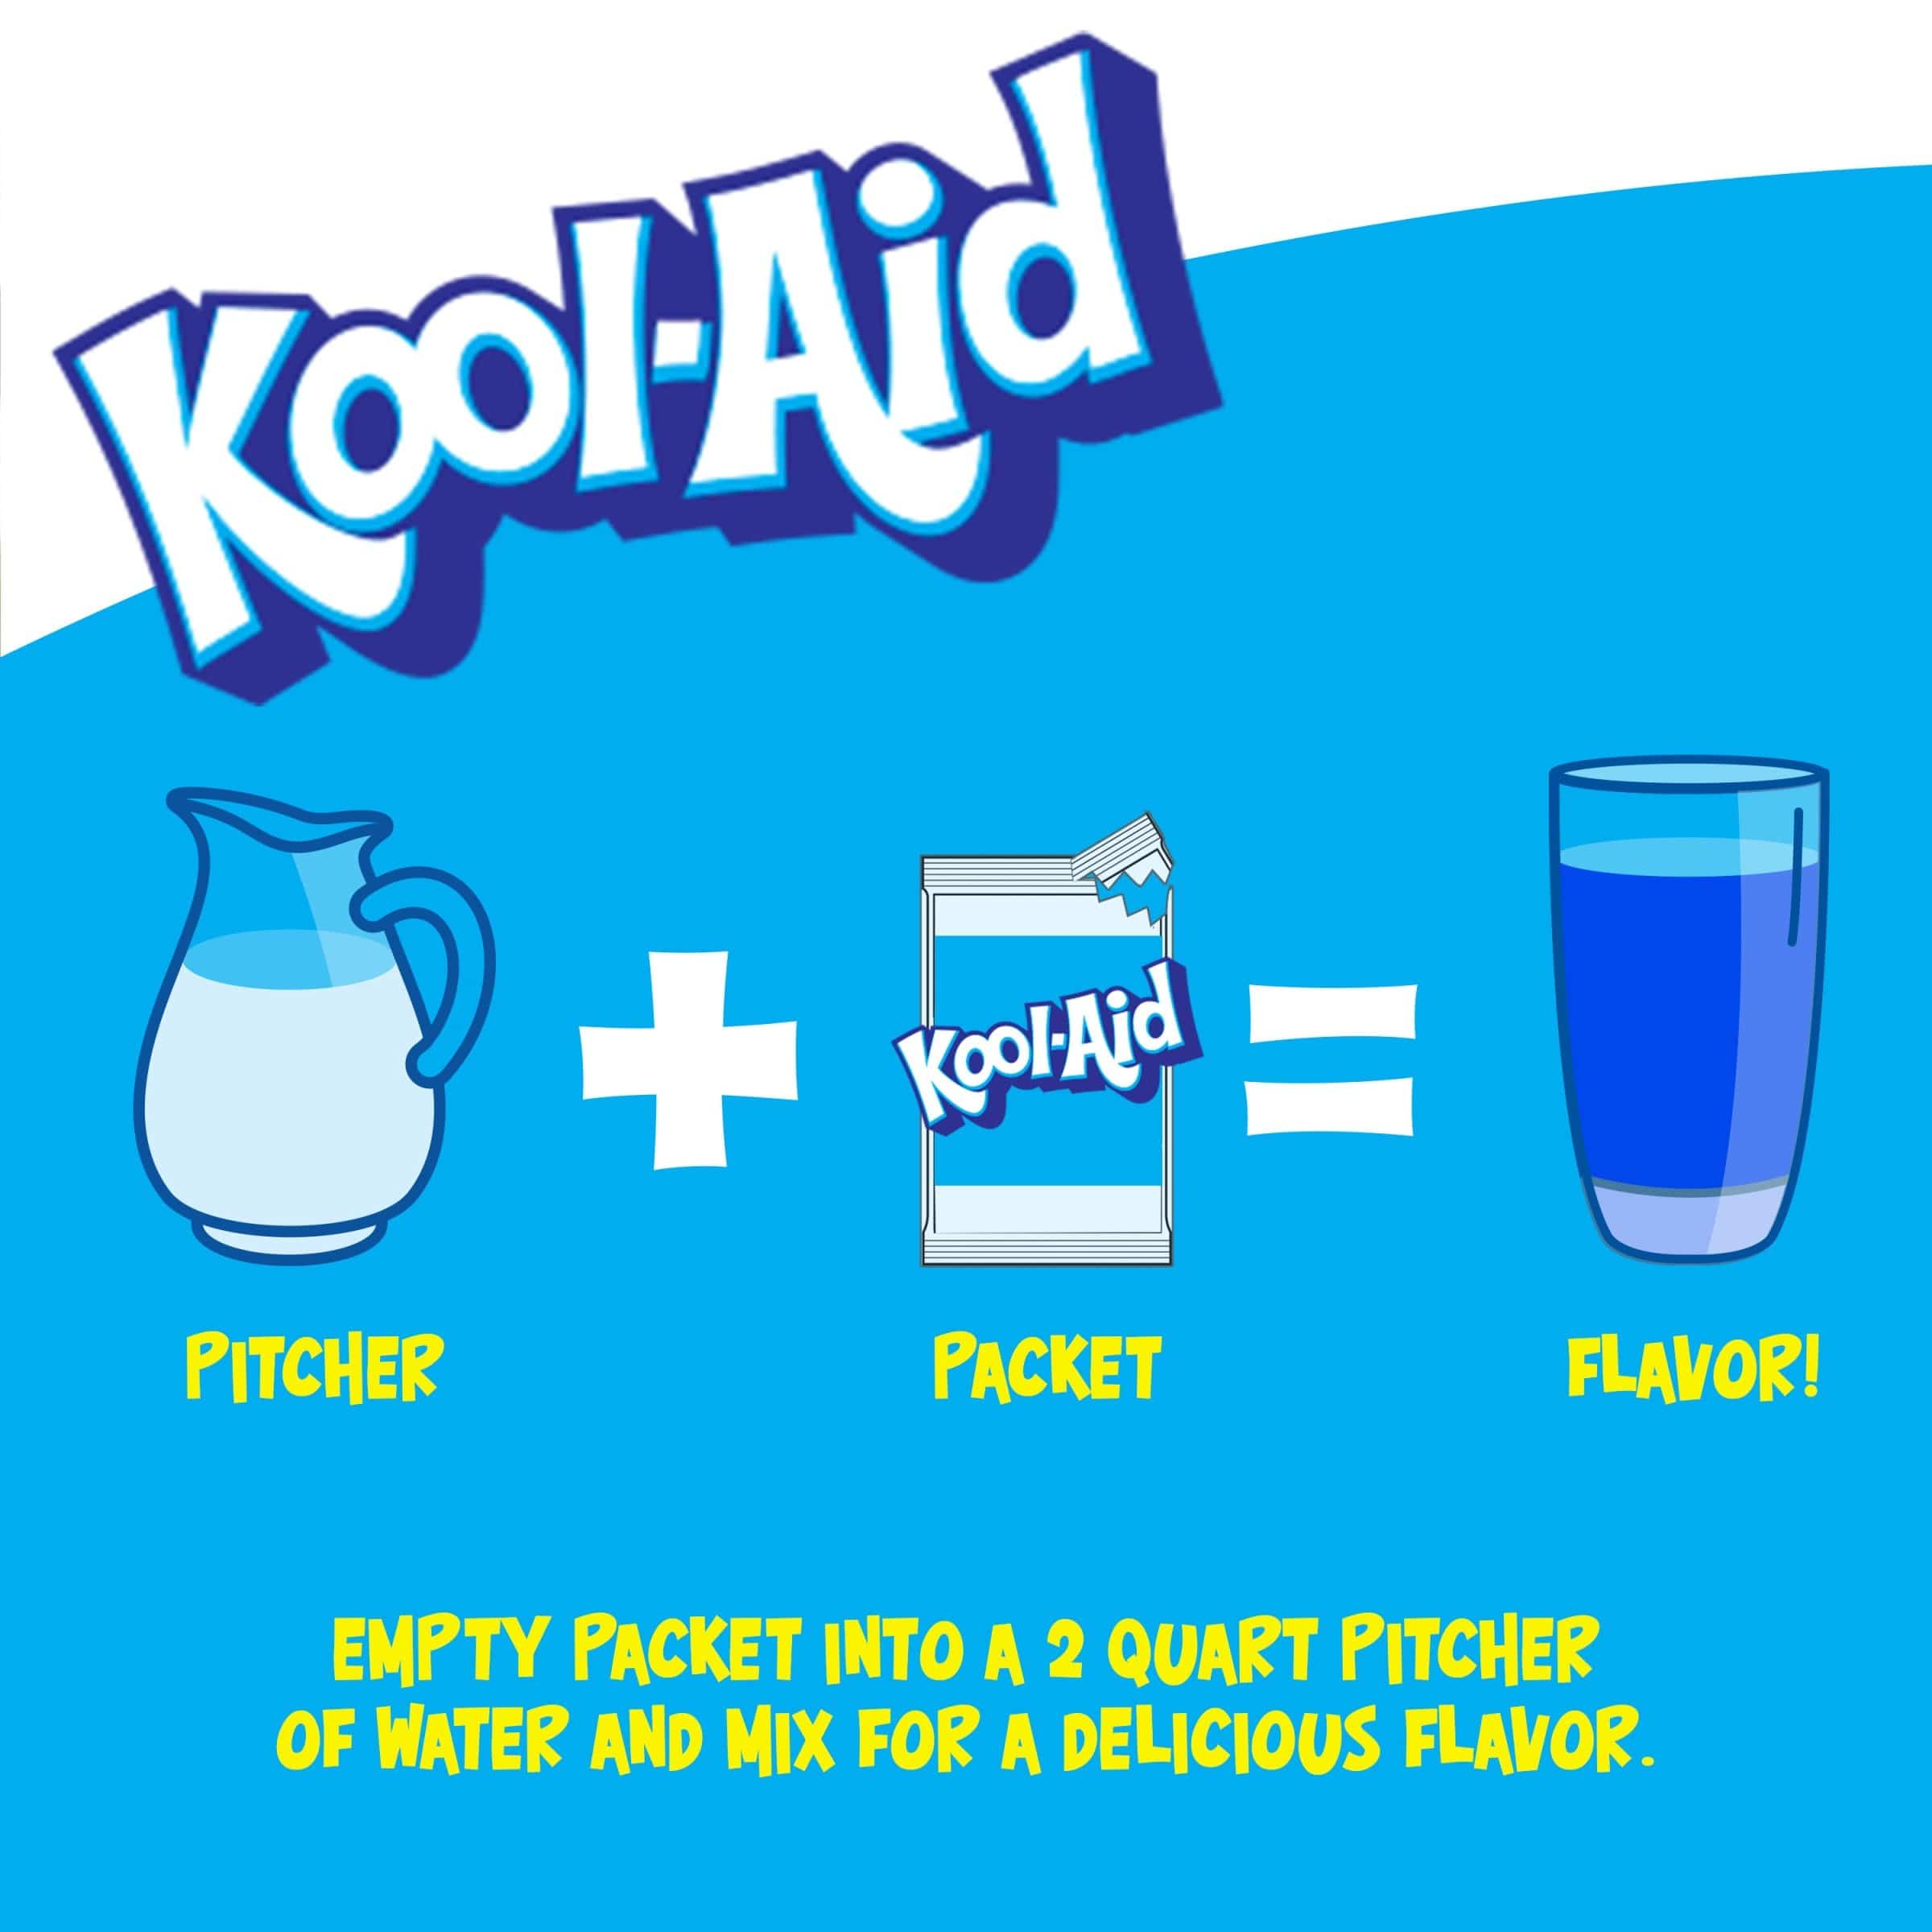 Une affiche blanc au-dessus et bleu en-dessous avec une carafe blanche, un paquet de KoolAid et un verre rempli de boisson brune 